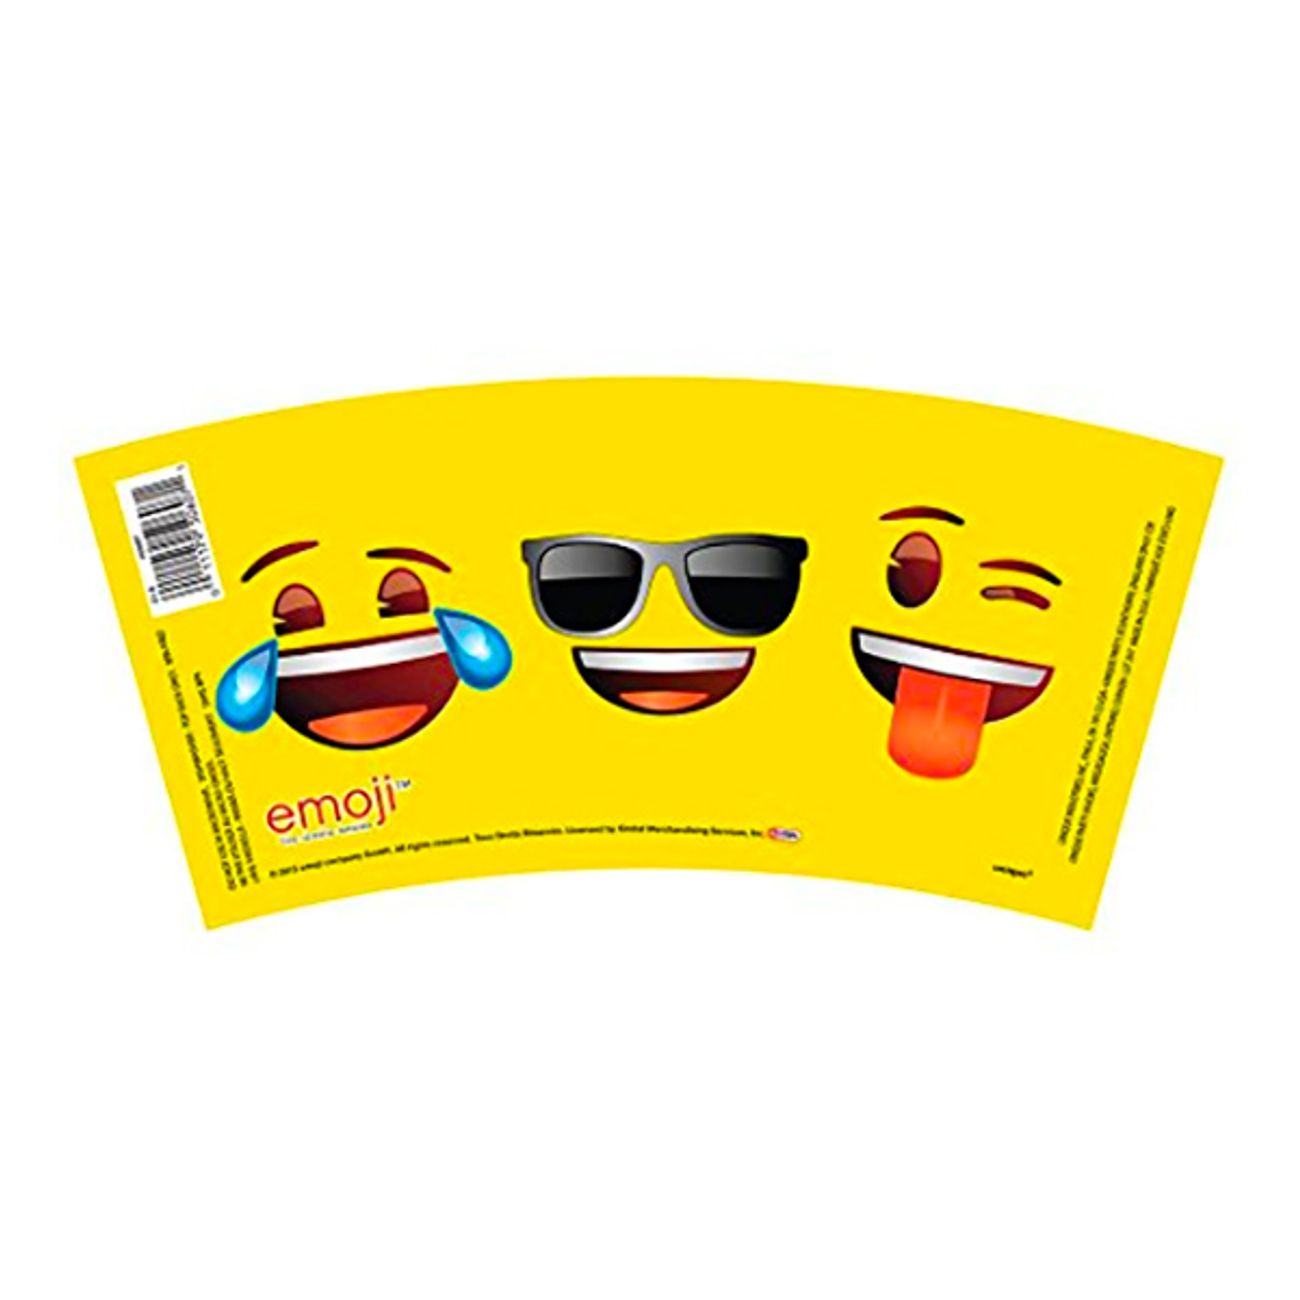 emoji-souvenirmugg-3